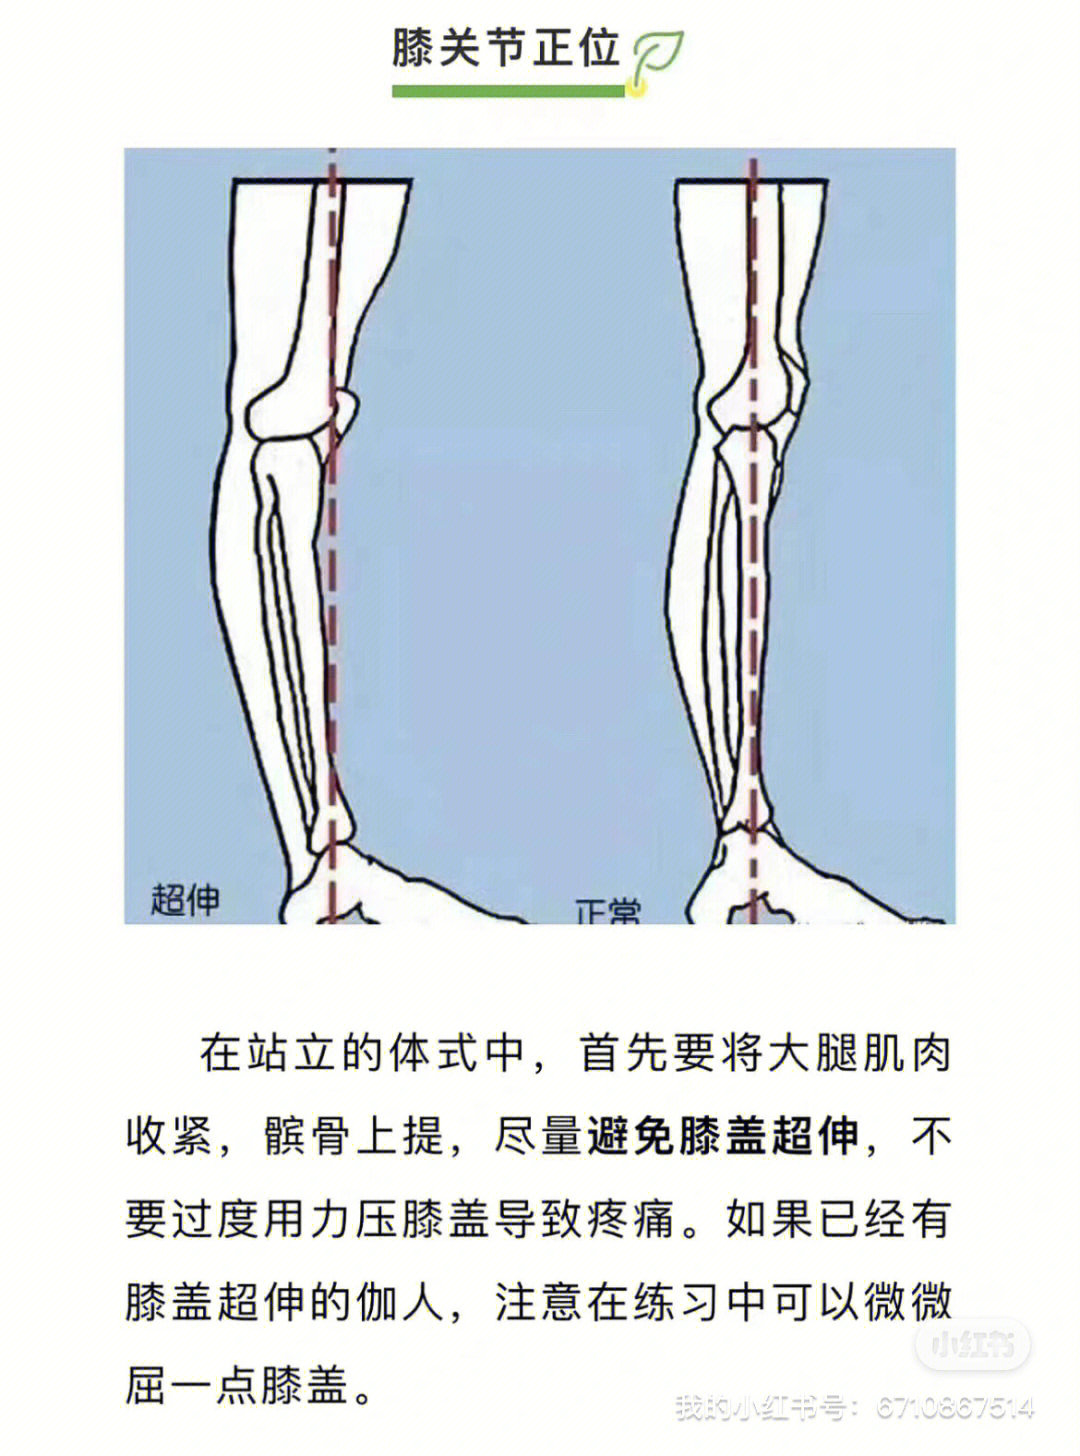 比如山式,战士一,战士二式,很容易把膝盖内扣或者超伸,引发膝关节疼痛